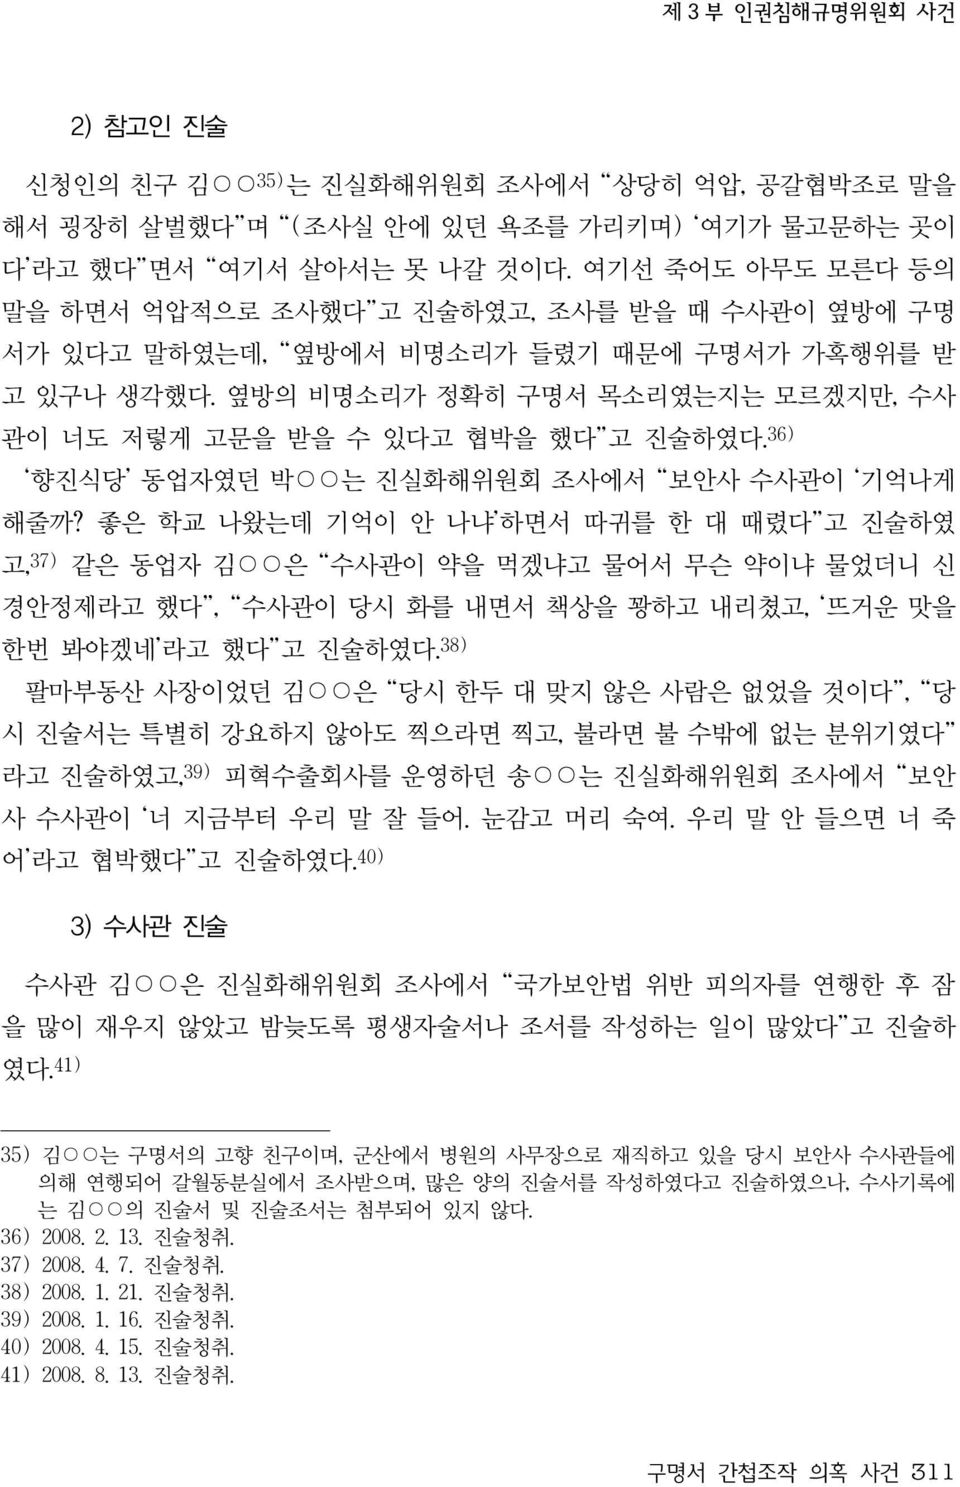 36) 향진식당 동업자였던 박 는 진실화해위원회 조사에서 보안사 수사관이 기억나게 해줄까?